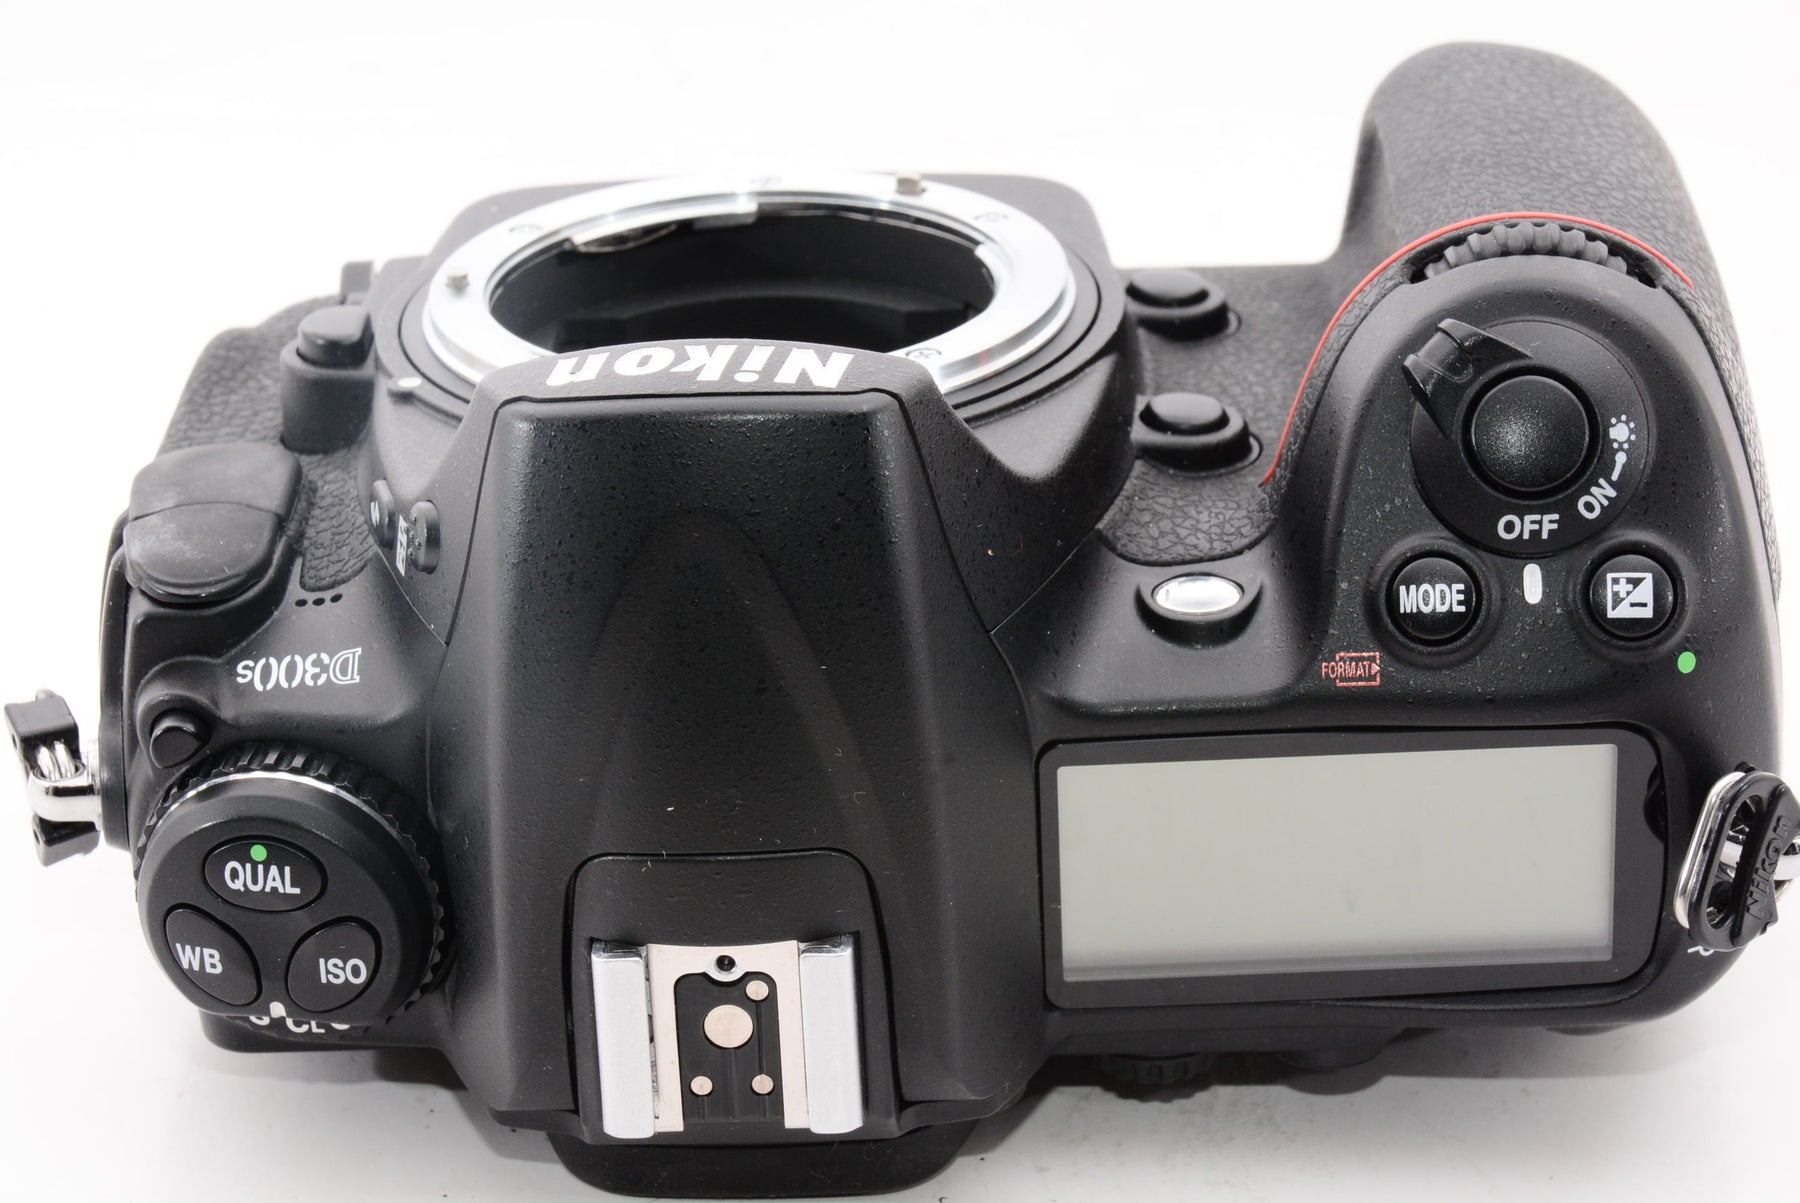 【良品】Nikon デジタル一眼レフカメラ D300S ボディ D300S